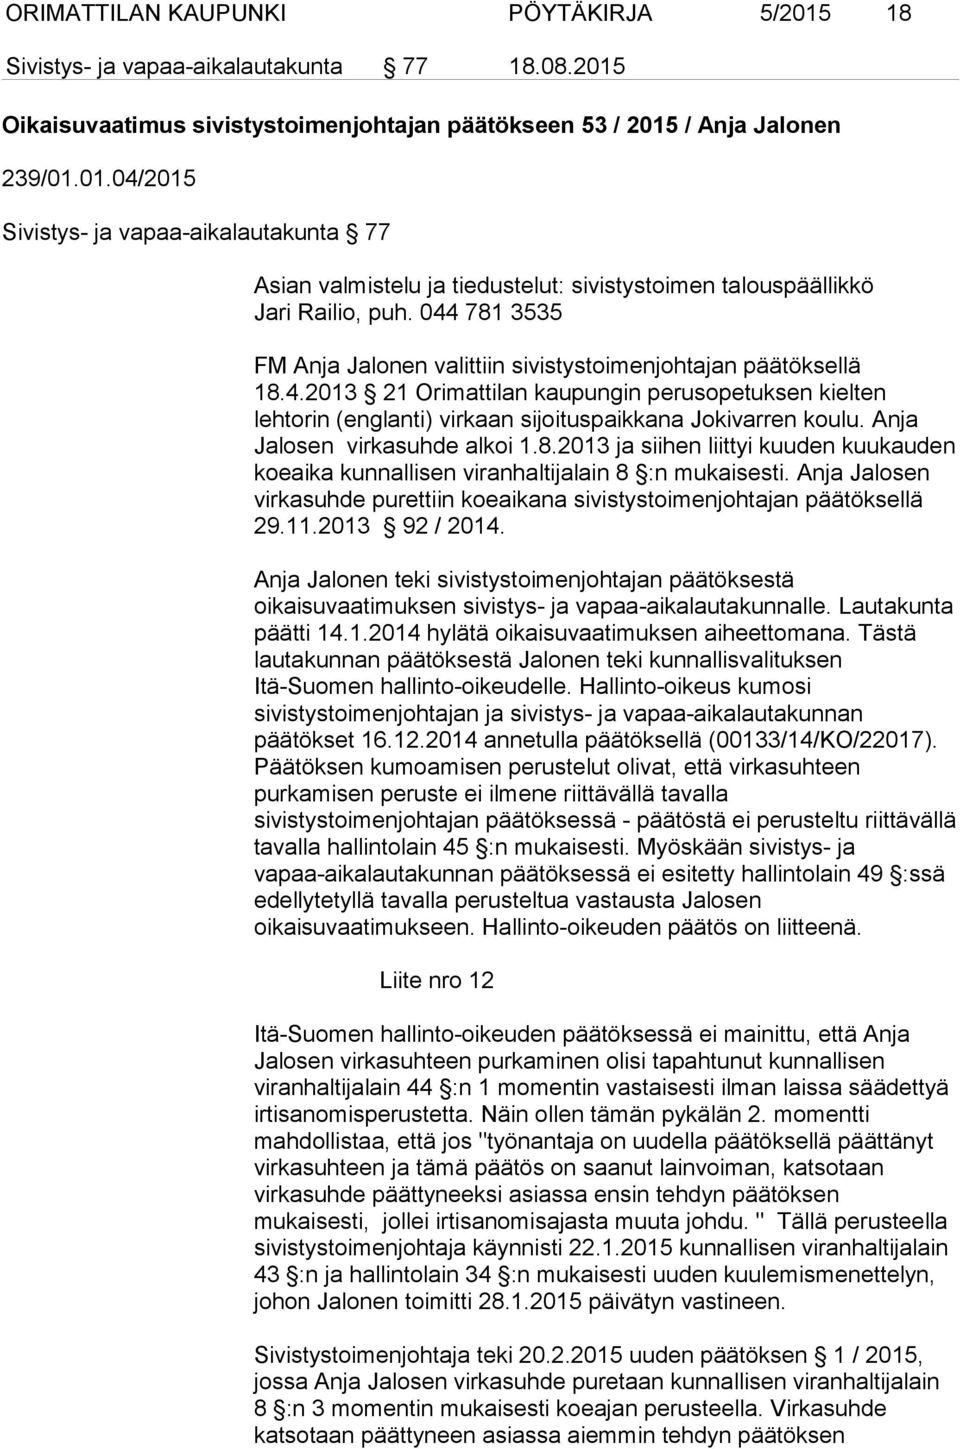 Anja Jalosen virkasuhde alkoi 1.8.2013 ja siihen liittyi kuuden kuukauden koeaika kunnallisen viranhaltijalain 8 :n mukaisesti.